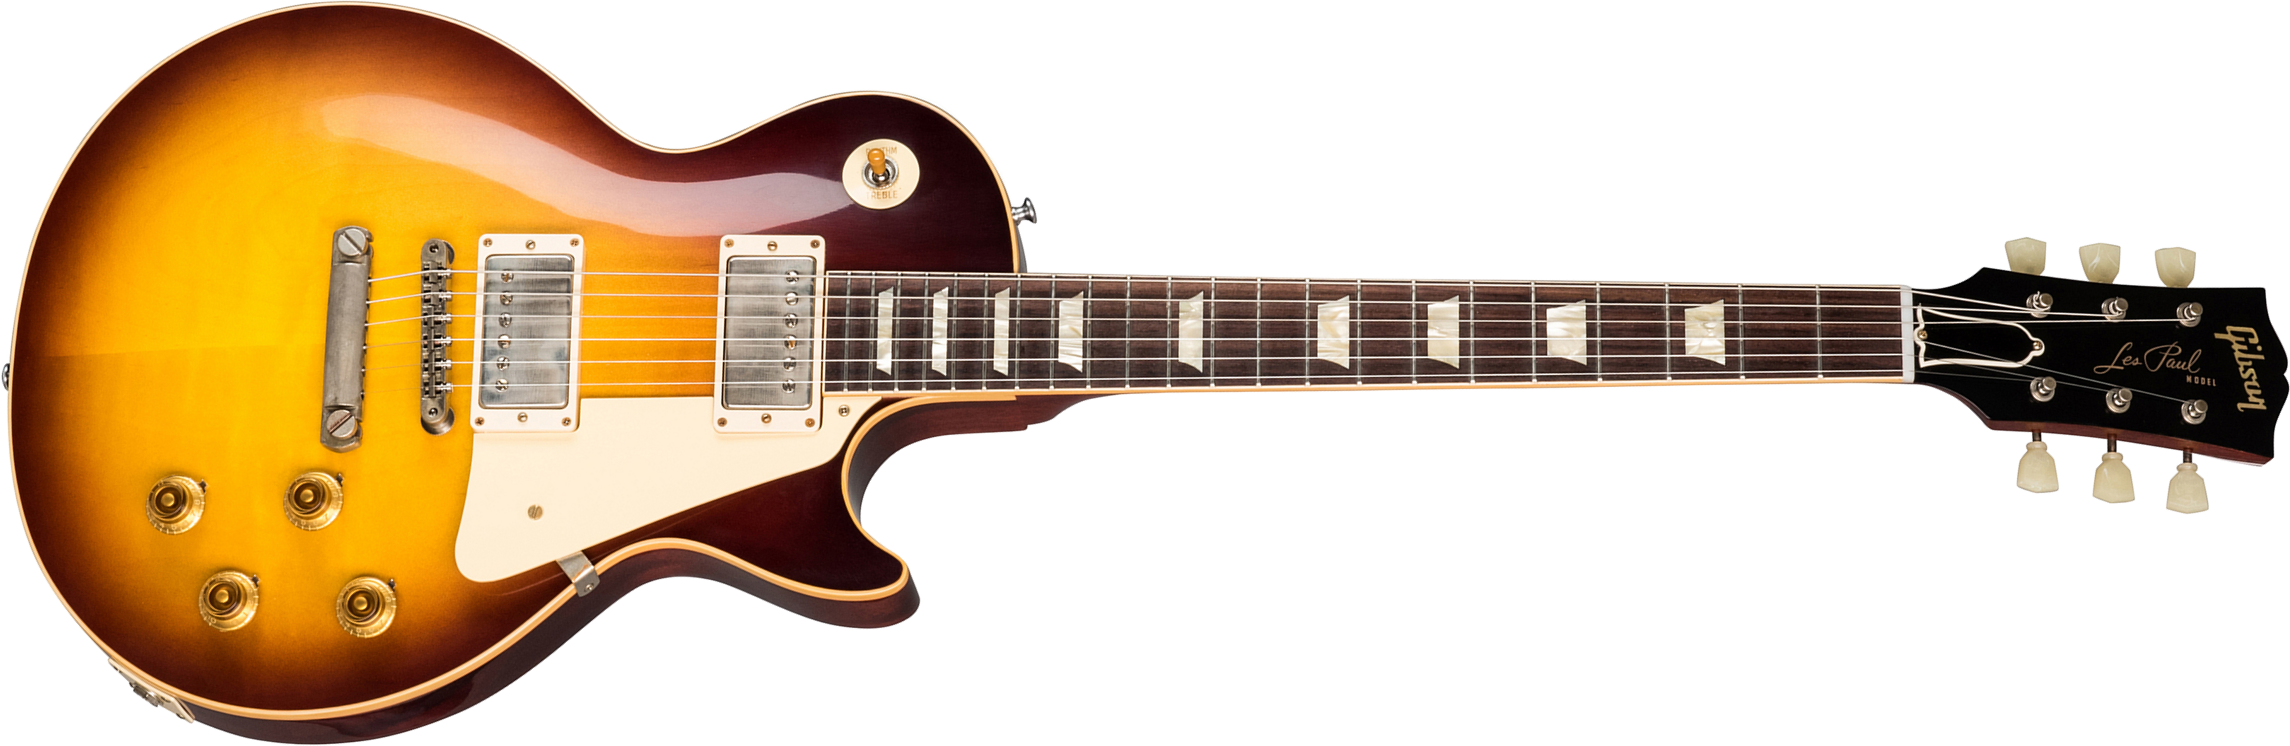 Gibson Custom Shop Les Paul Standard 1958 Reissue 2019 2h Ht Rw - Vos Bourbon Burst - Single cut electric guitar - Main picture